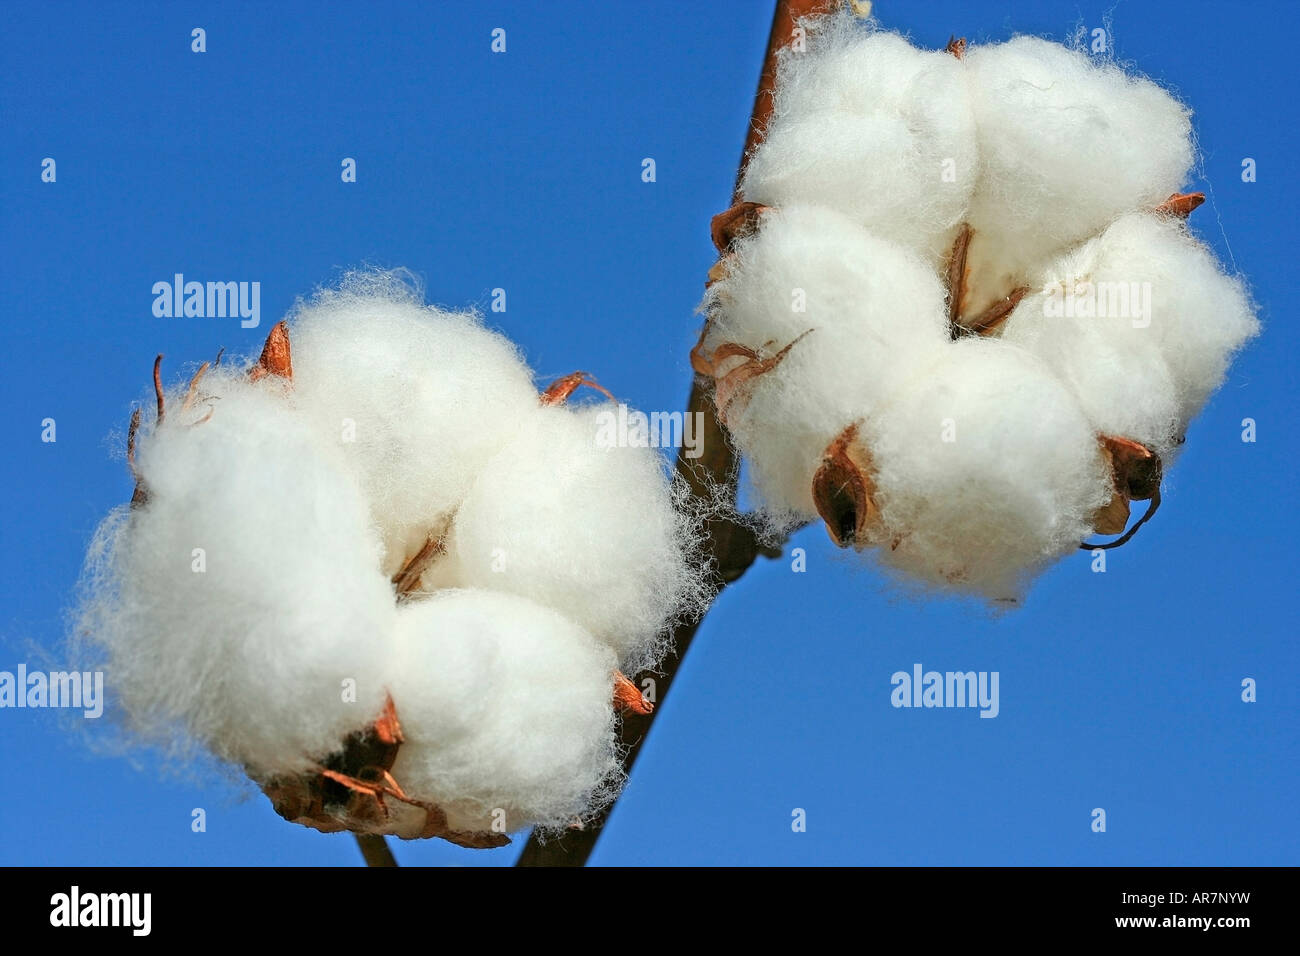 Cotton Gossypium sp. Stock Photo